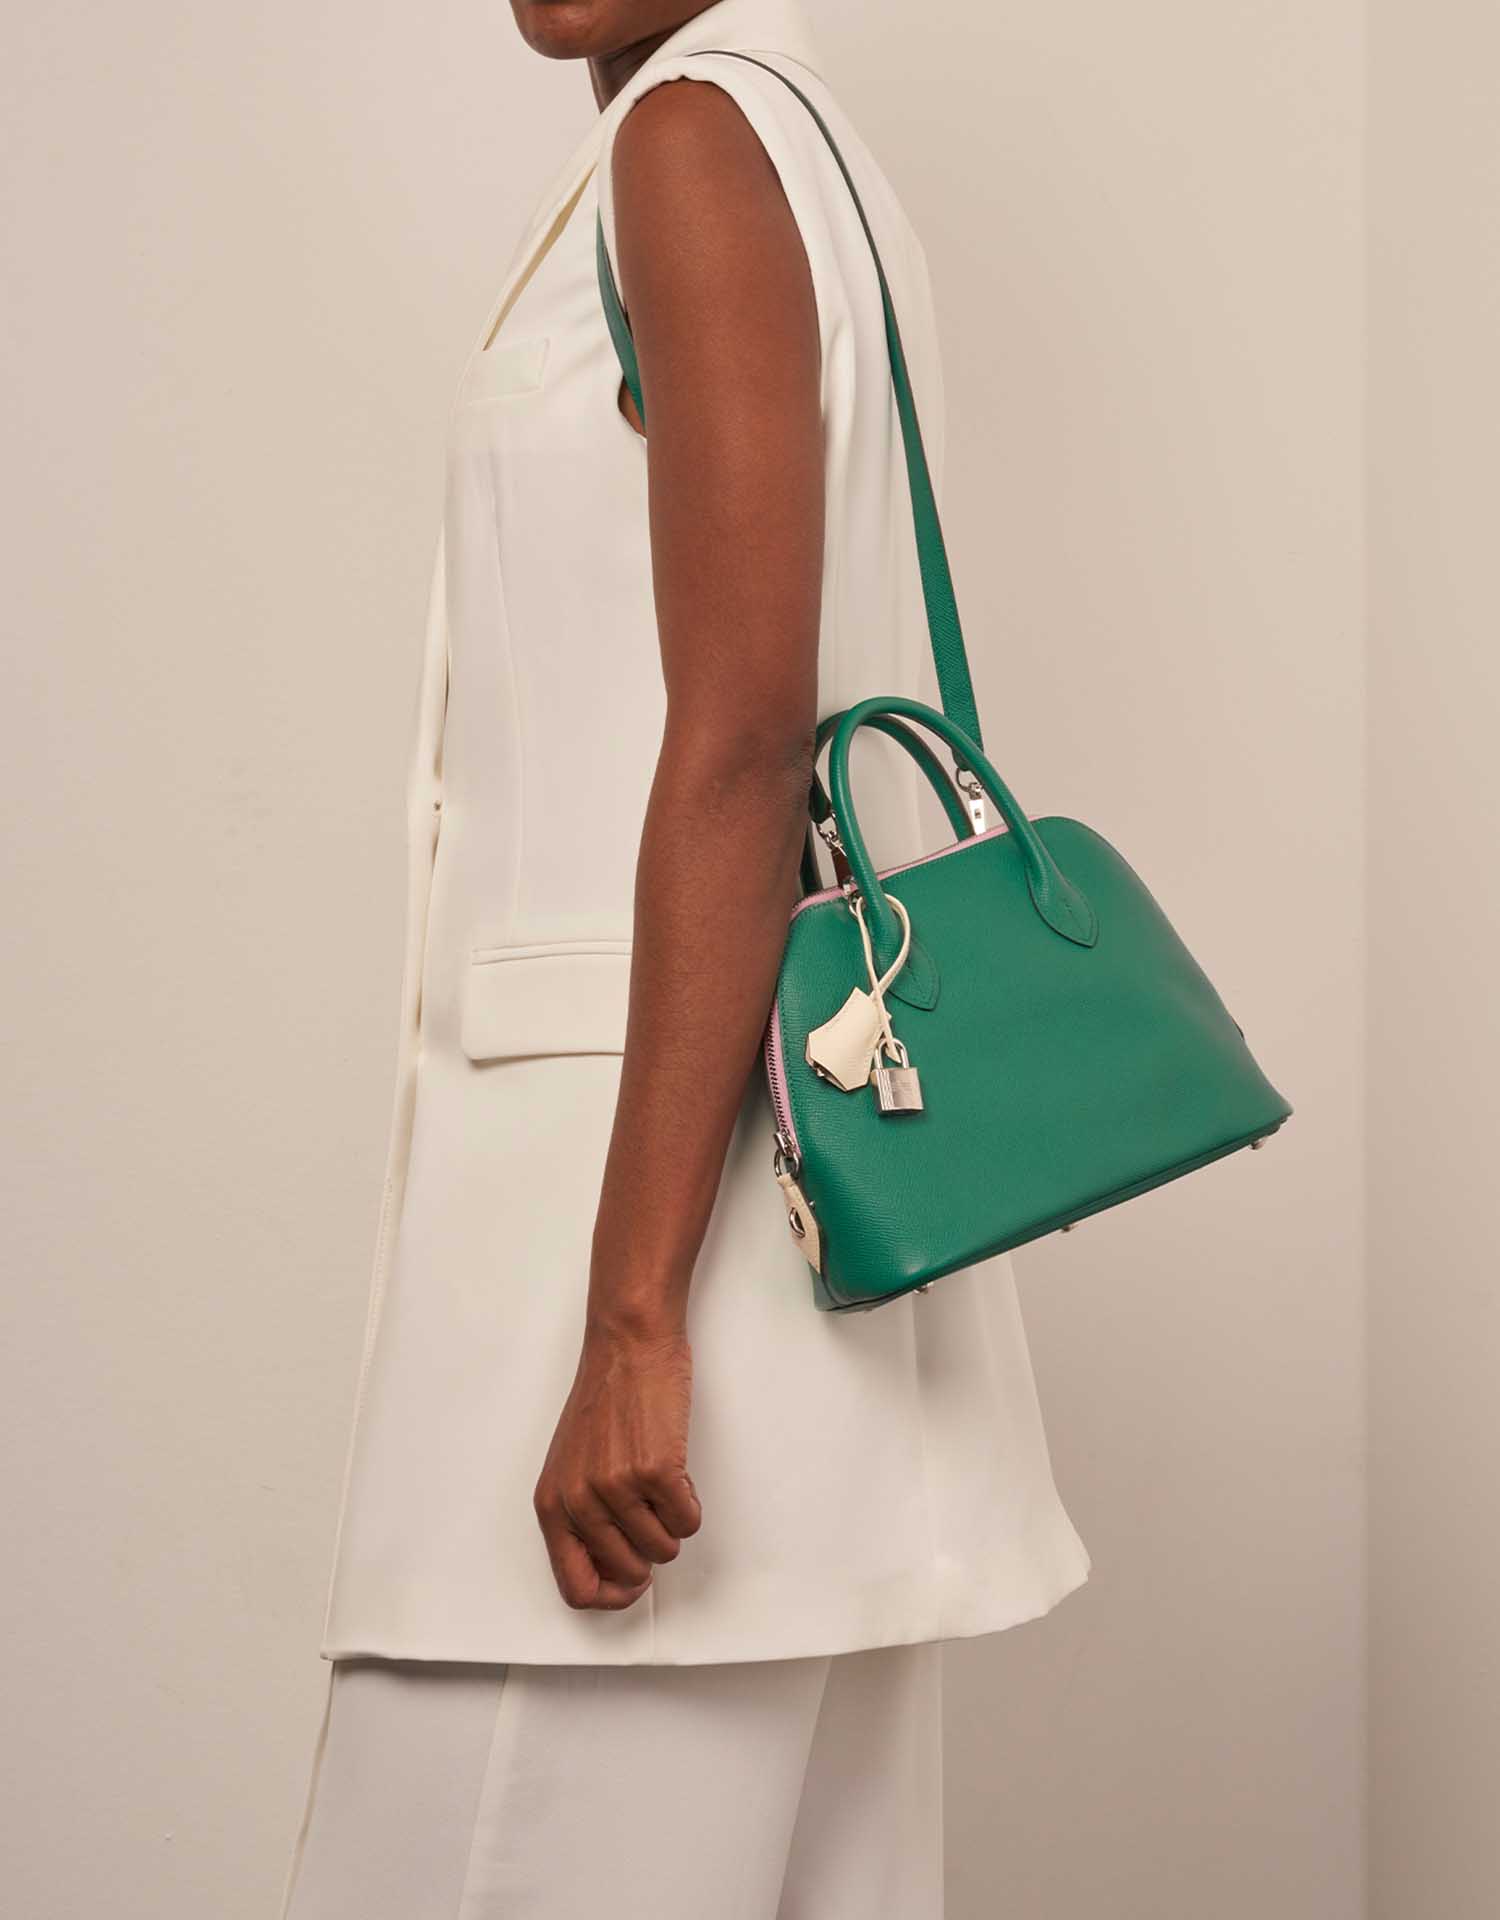 Hermès Bolide 27 VertJade-MauveSylvestre-Nata Größen Getragen | Verkaufen Sie Ihre Designer-Tasche auf Saclab.com